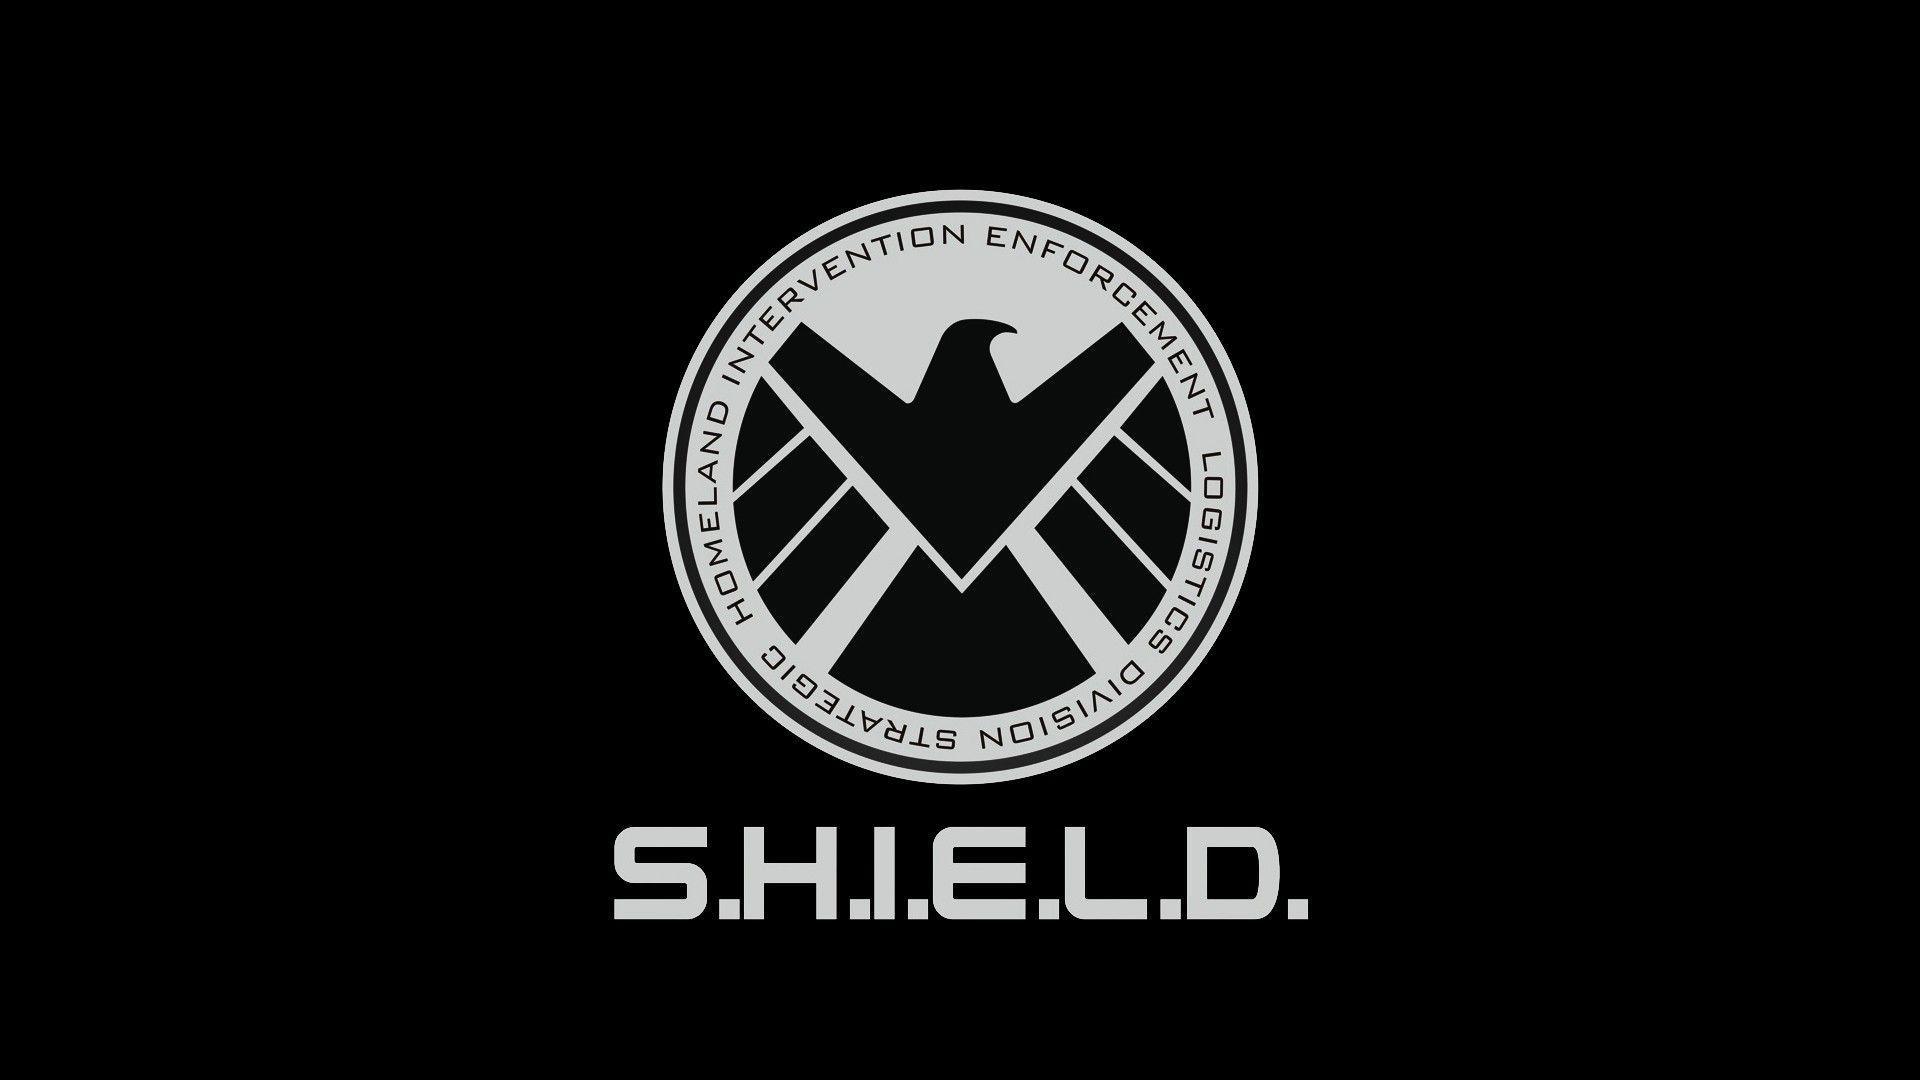 Shield Wallpaper Images - Free Download on Freepik